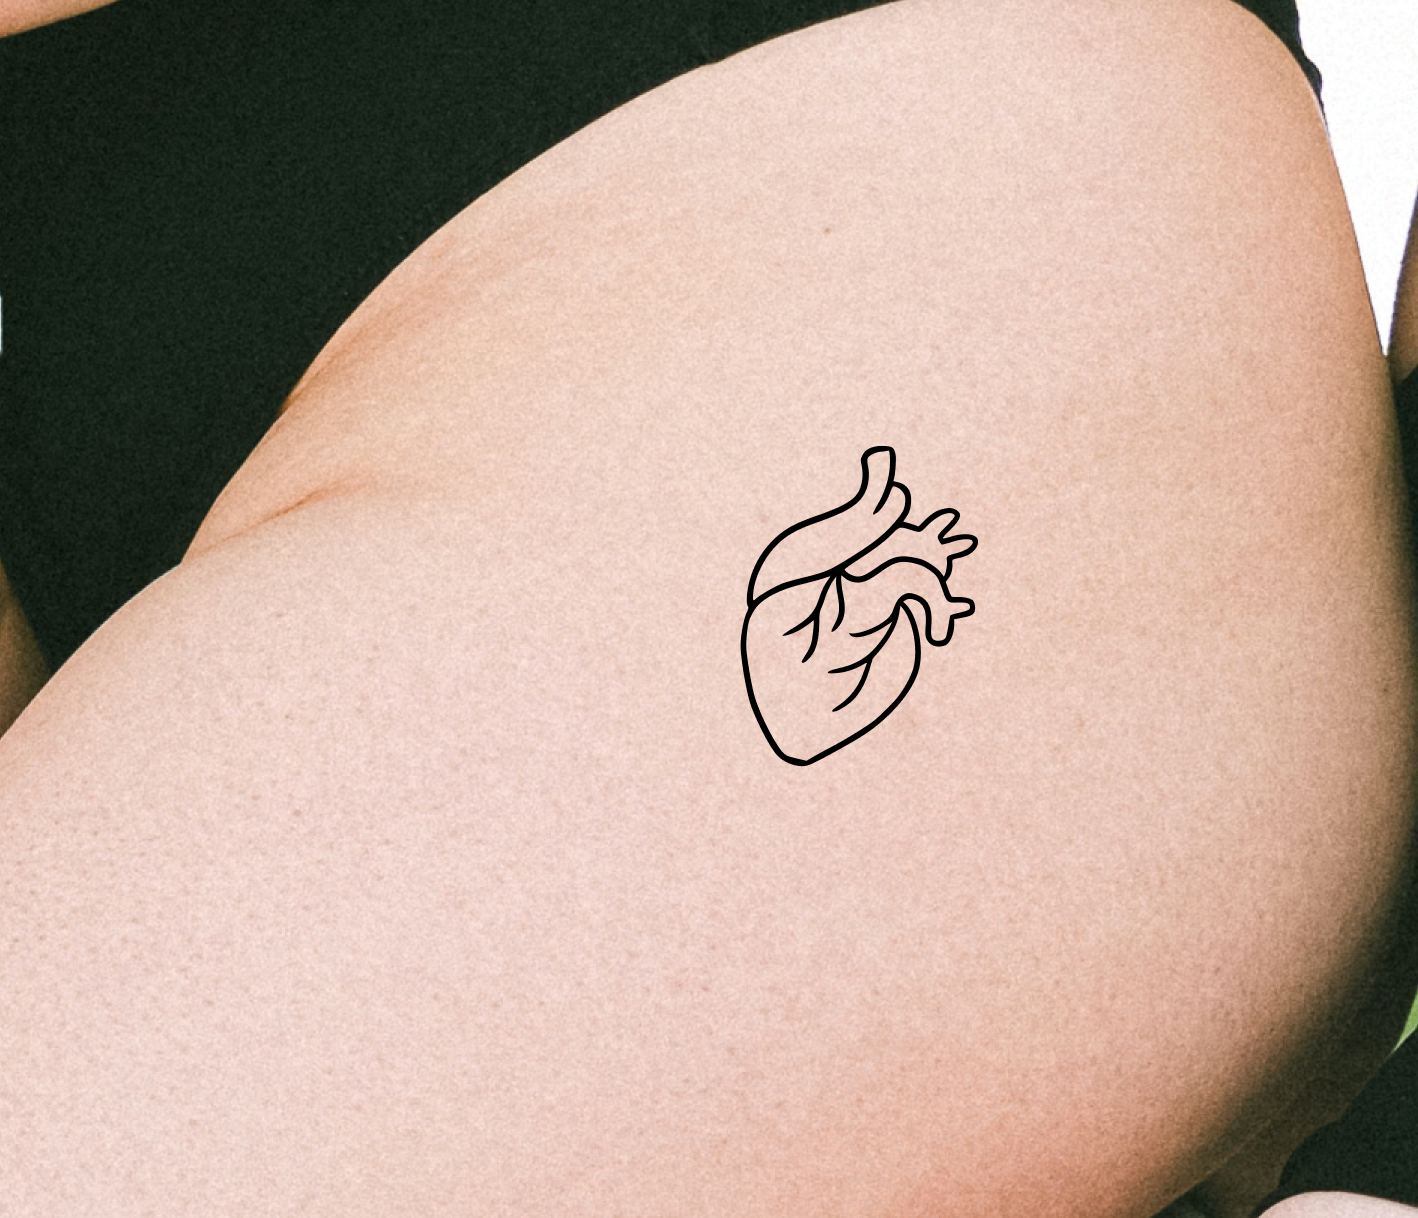 Grateful Tattoo – Tattly Temporary Tattoos & Stickers